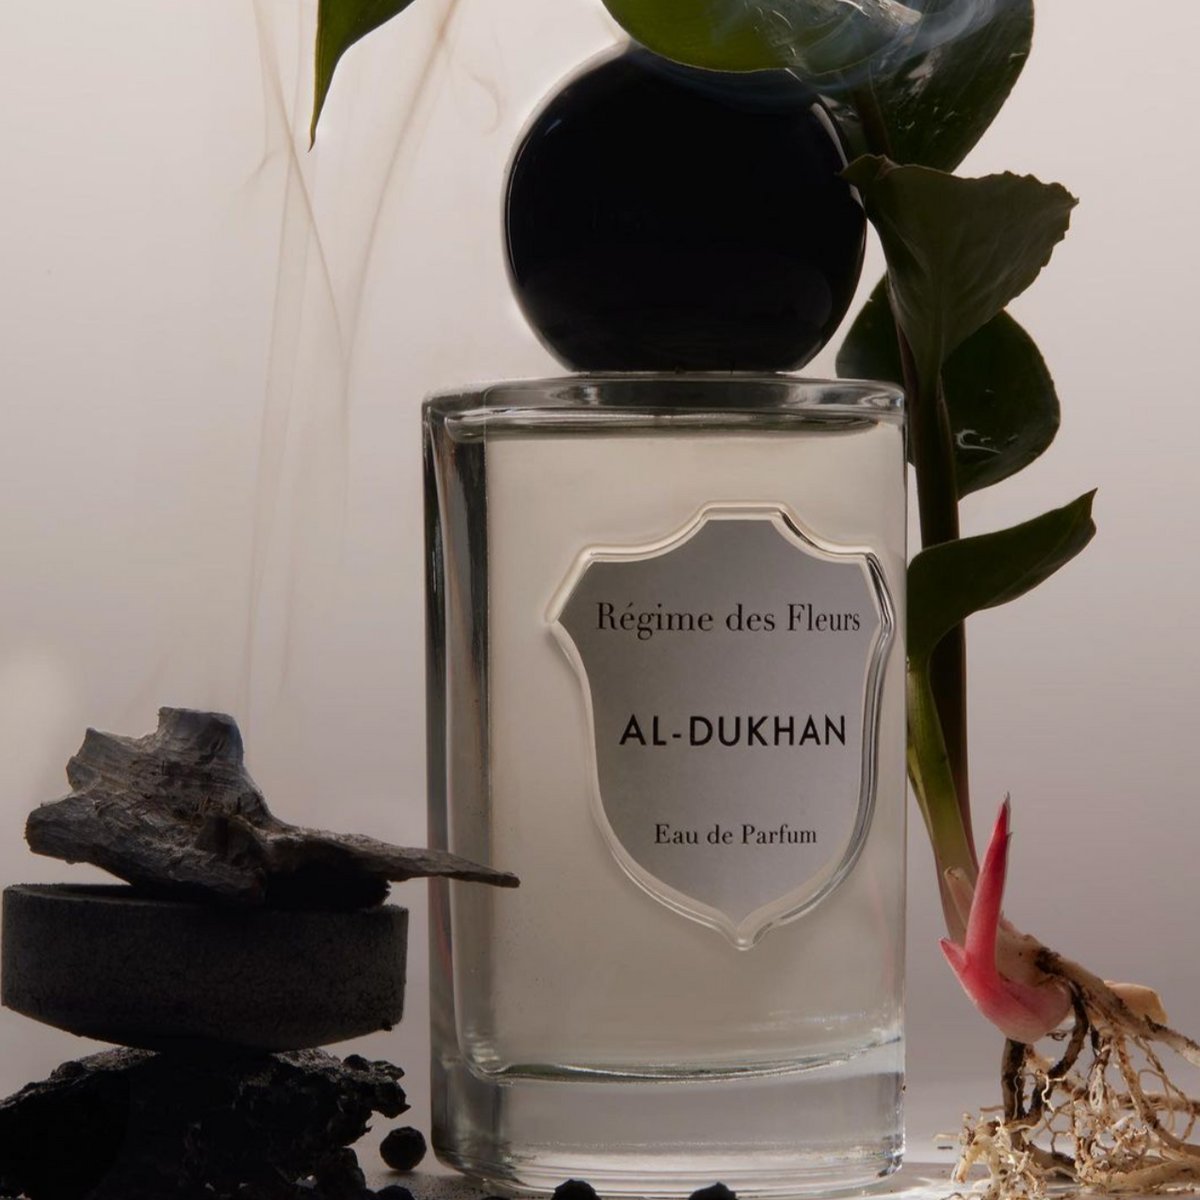 Al-Dukhan by Régime des Fleurs